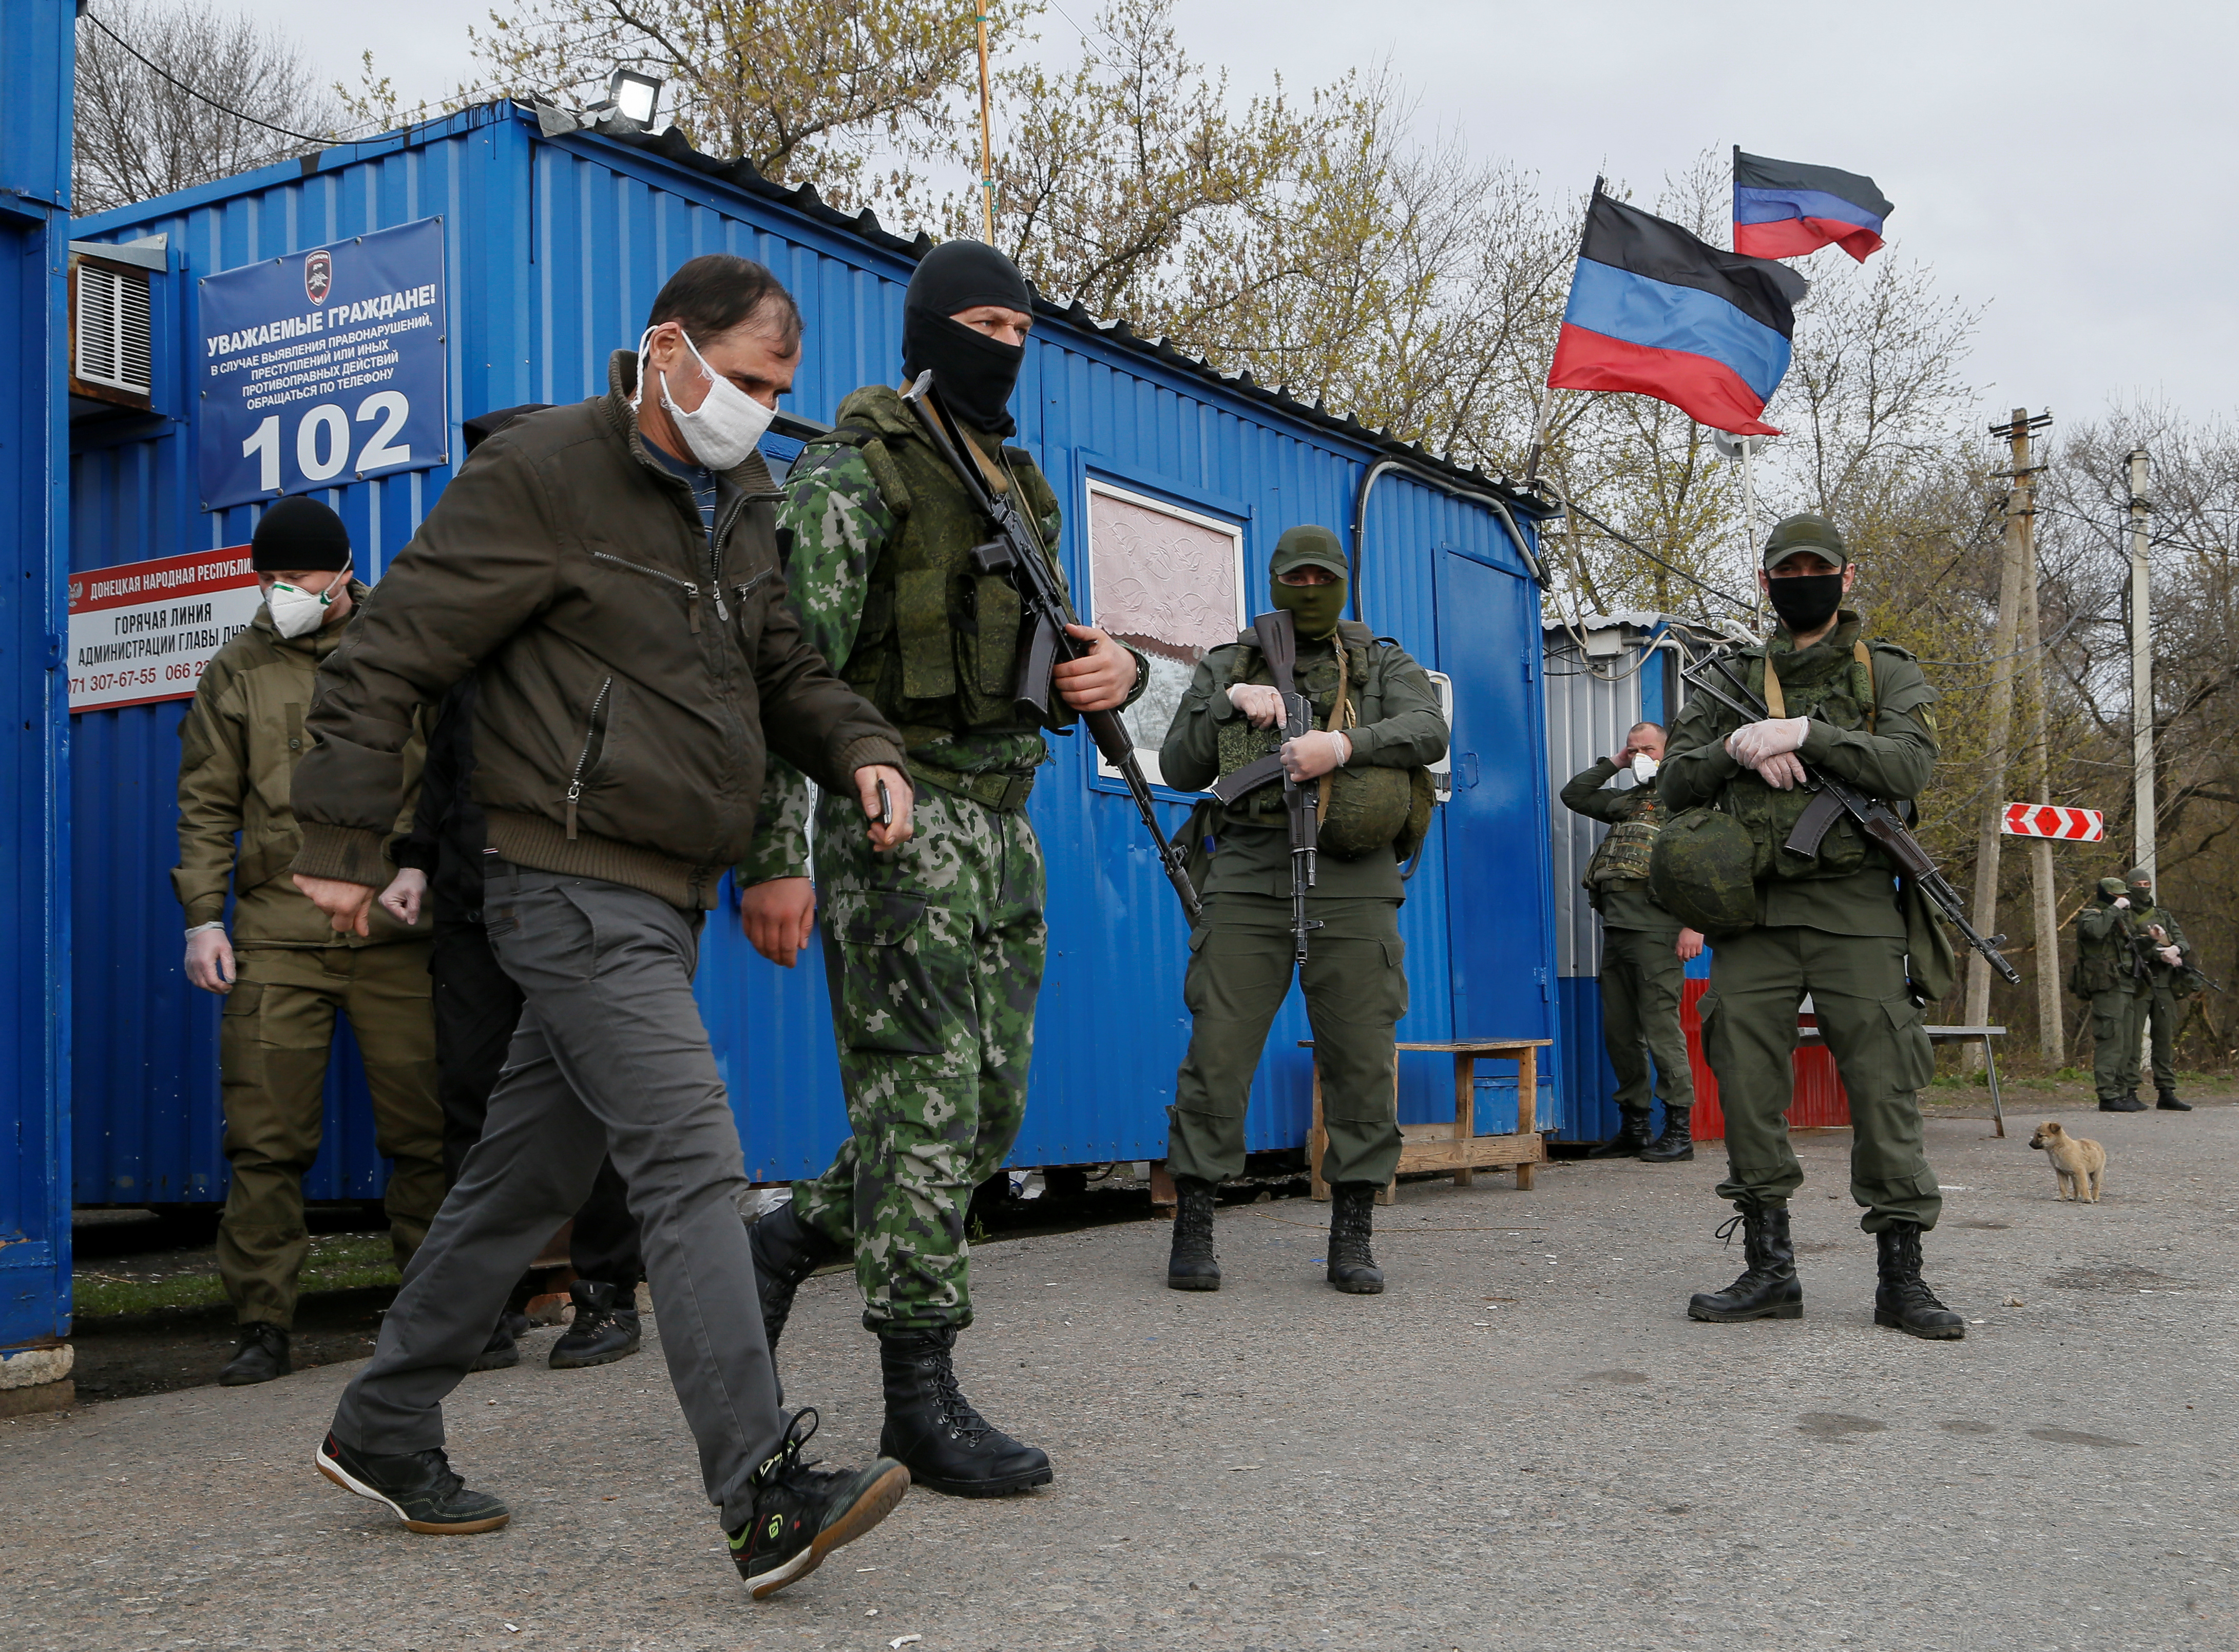 Con sus votos Cuba apoyó a los grupos armados ilegales respaldados por Rusia en la crisis de Ucrania (REUTERS/Alexander Ermochenko)